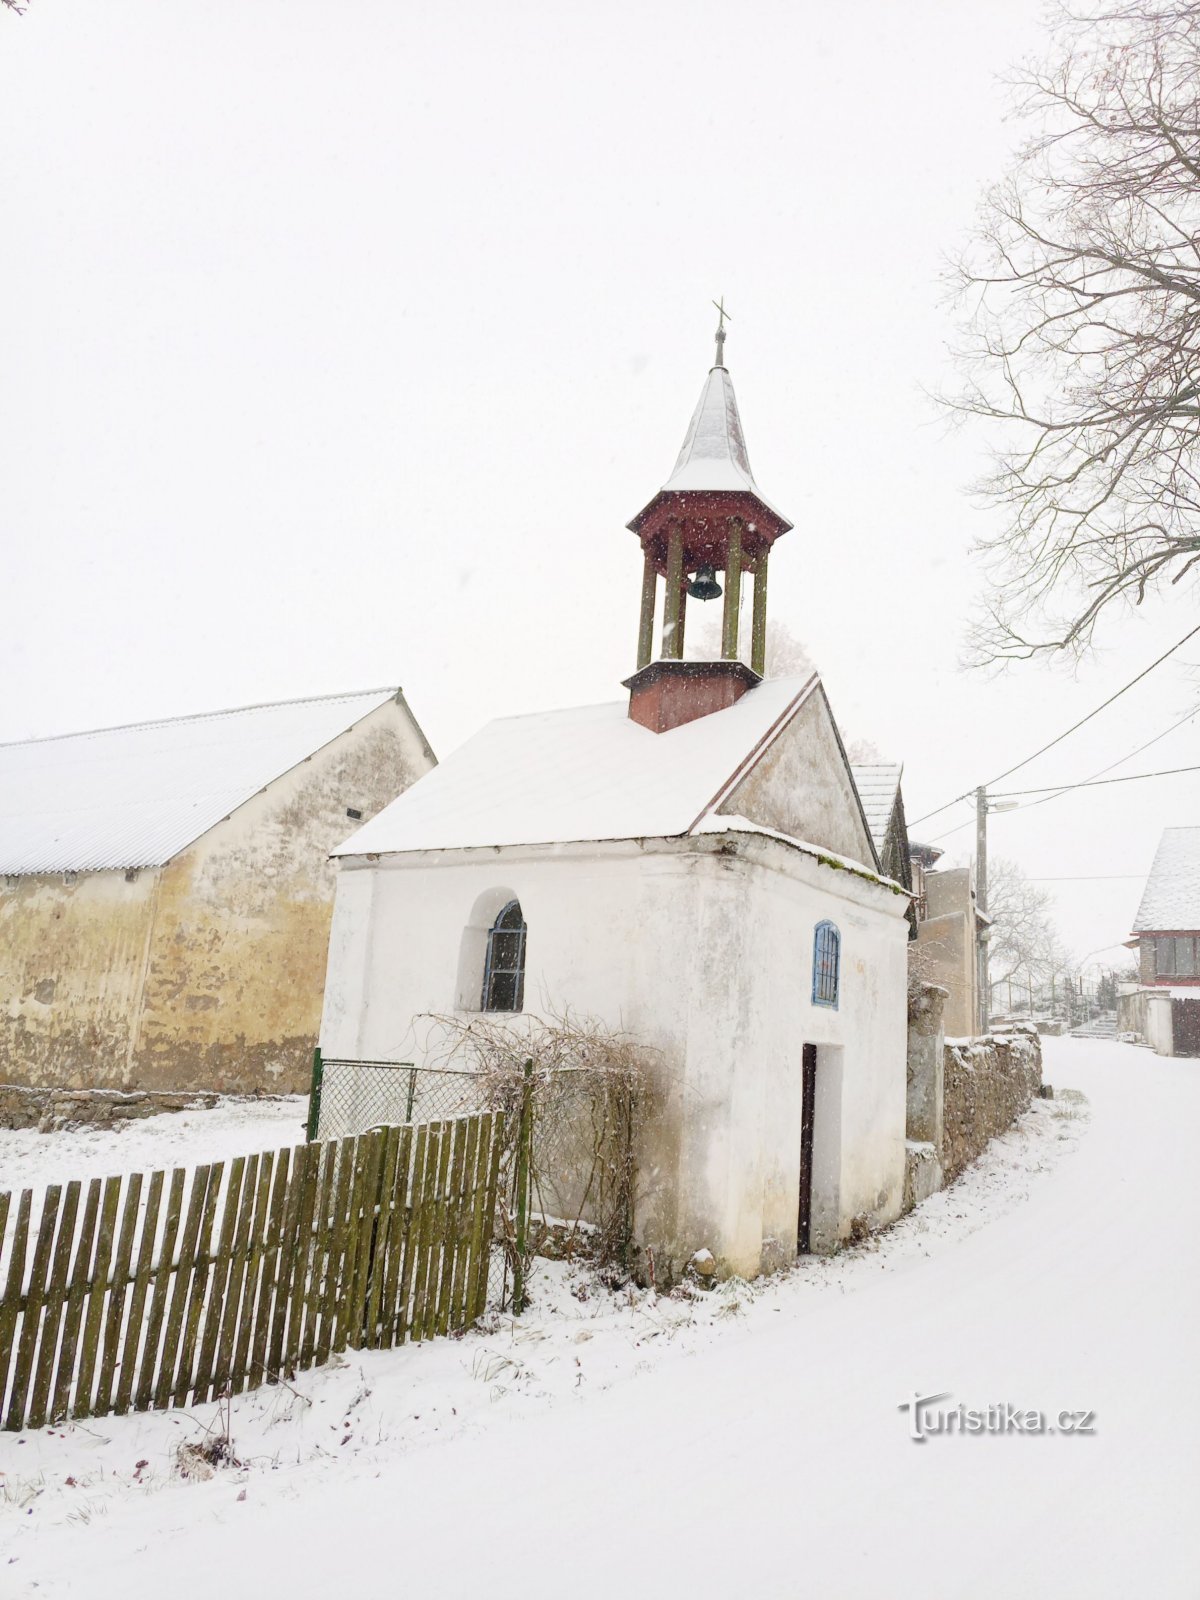 2. Kaplica z sześcioboczną drewnianą dzwonnicą w Cunkovie